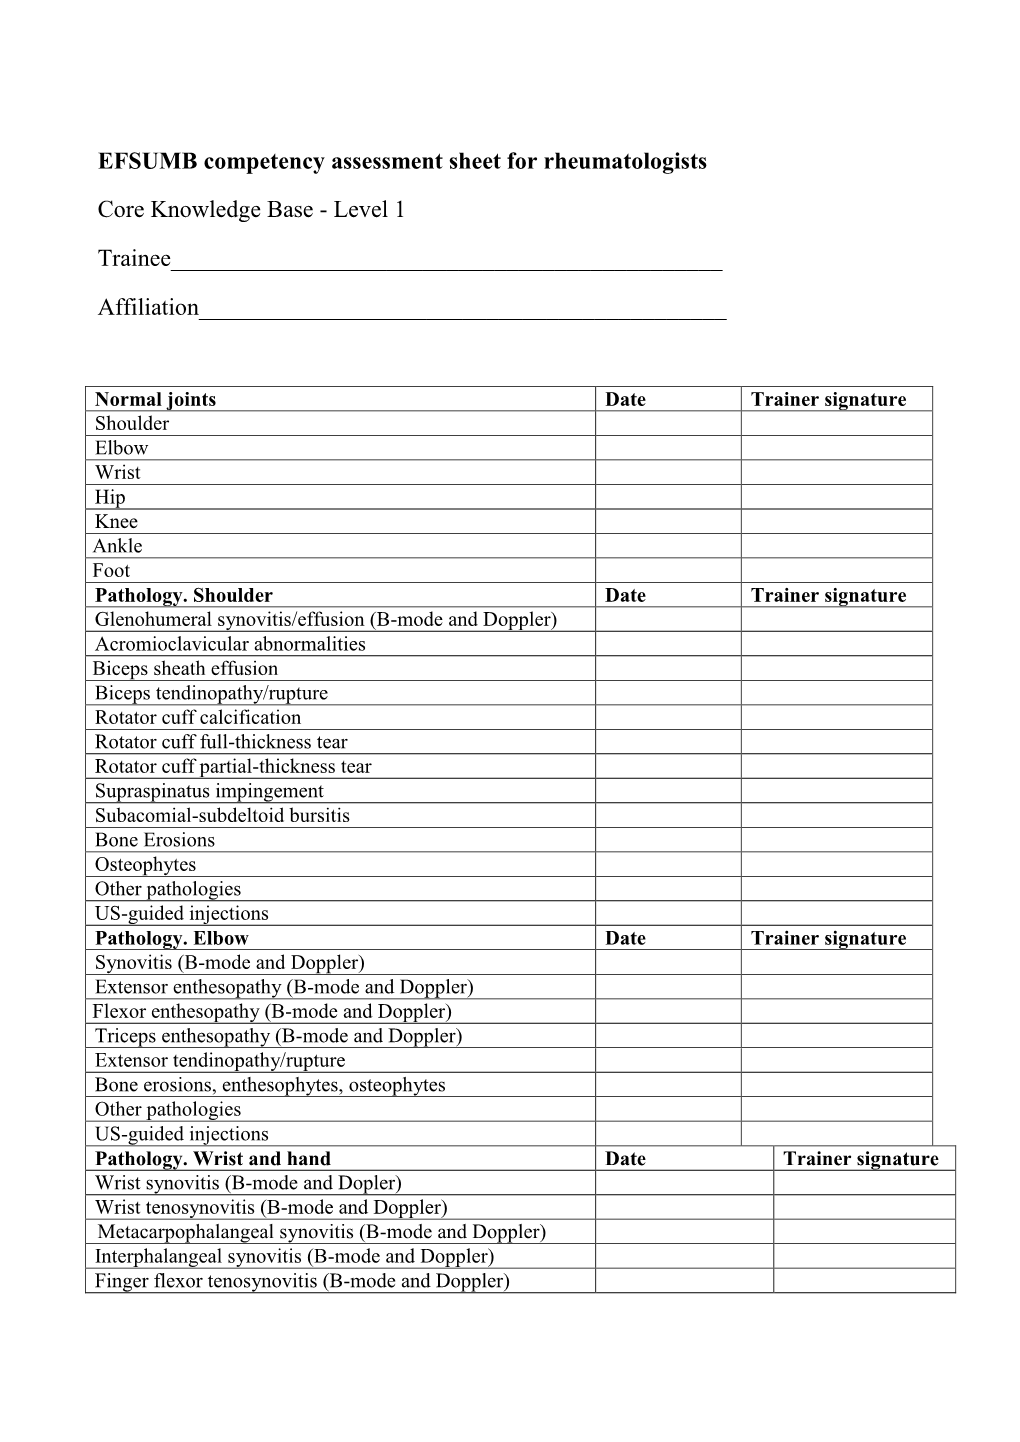 Level 1 EFSUMB Competency Assessment Sheet For